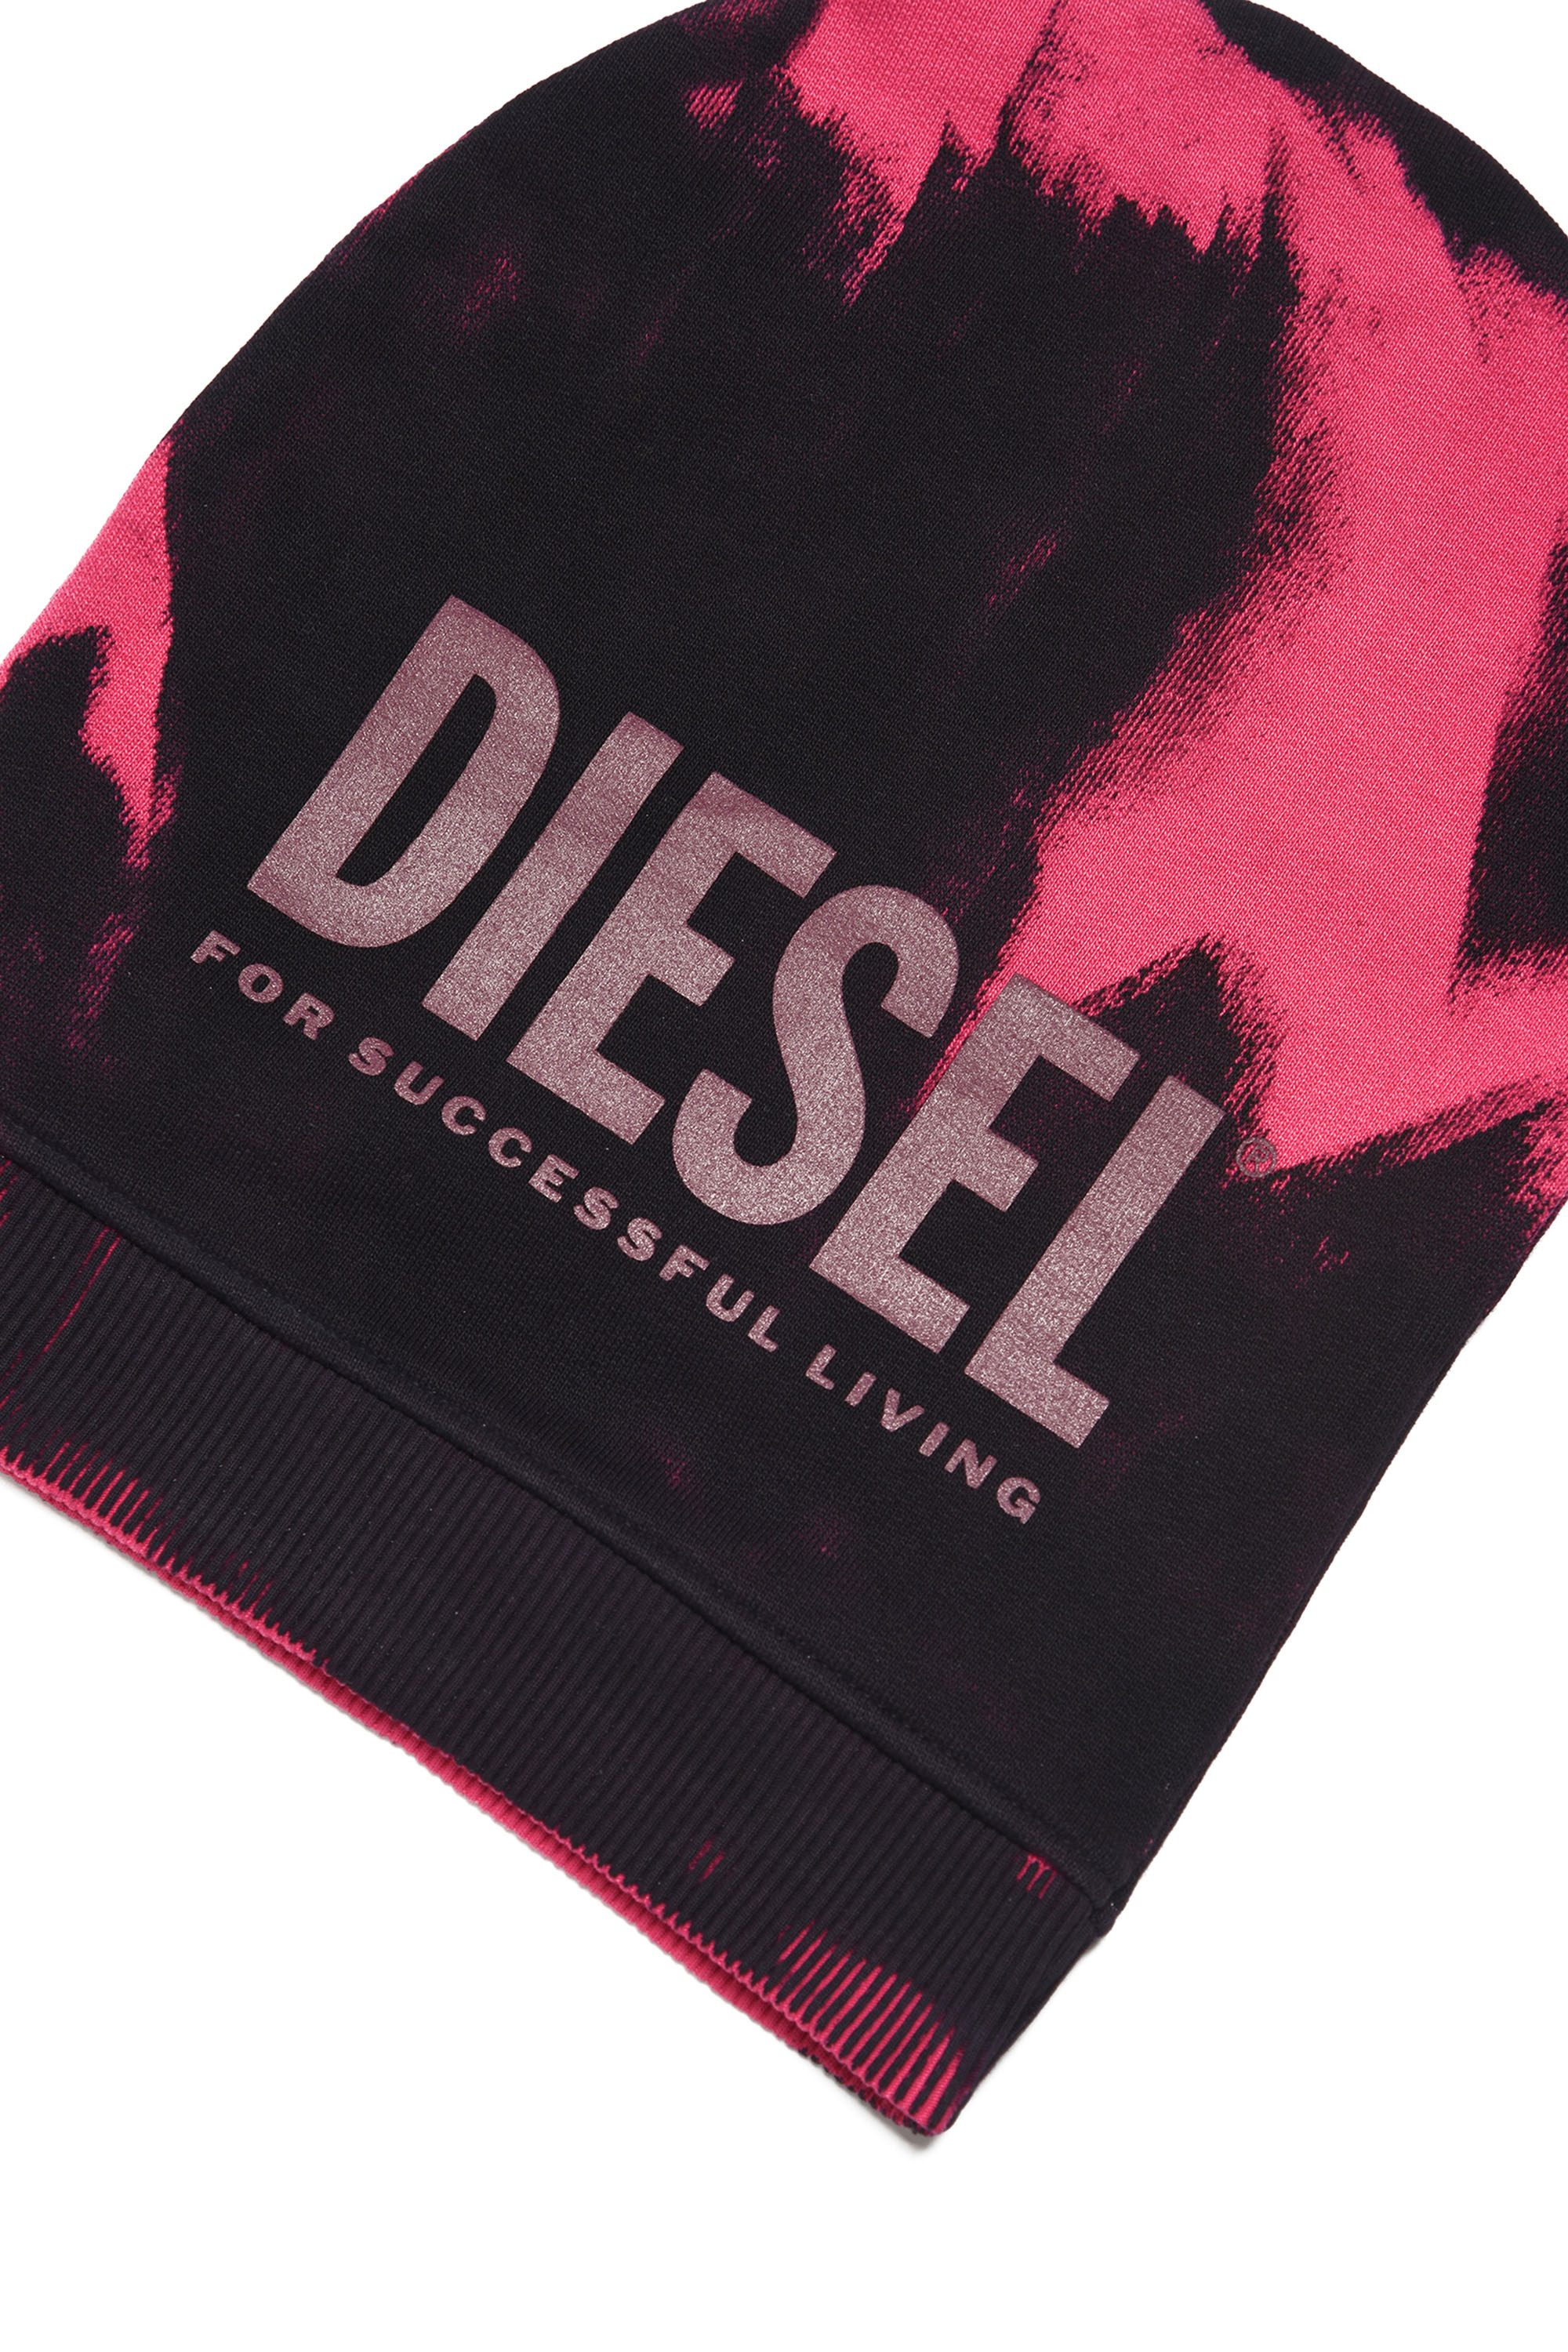 Diesel - FEDYM, Noir/Rose - Image 3